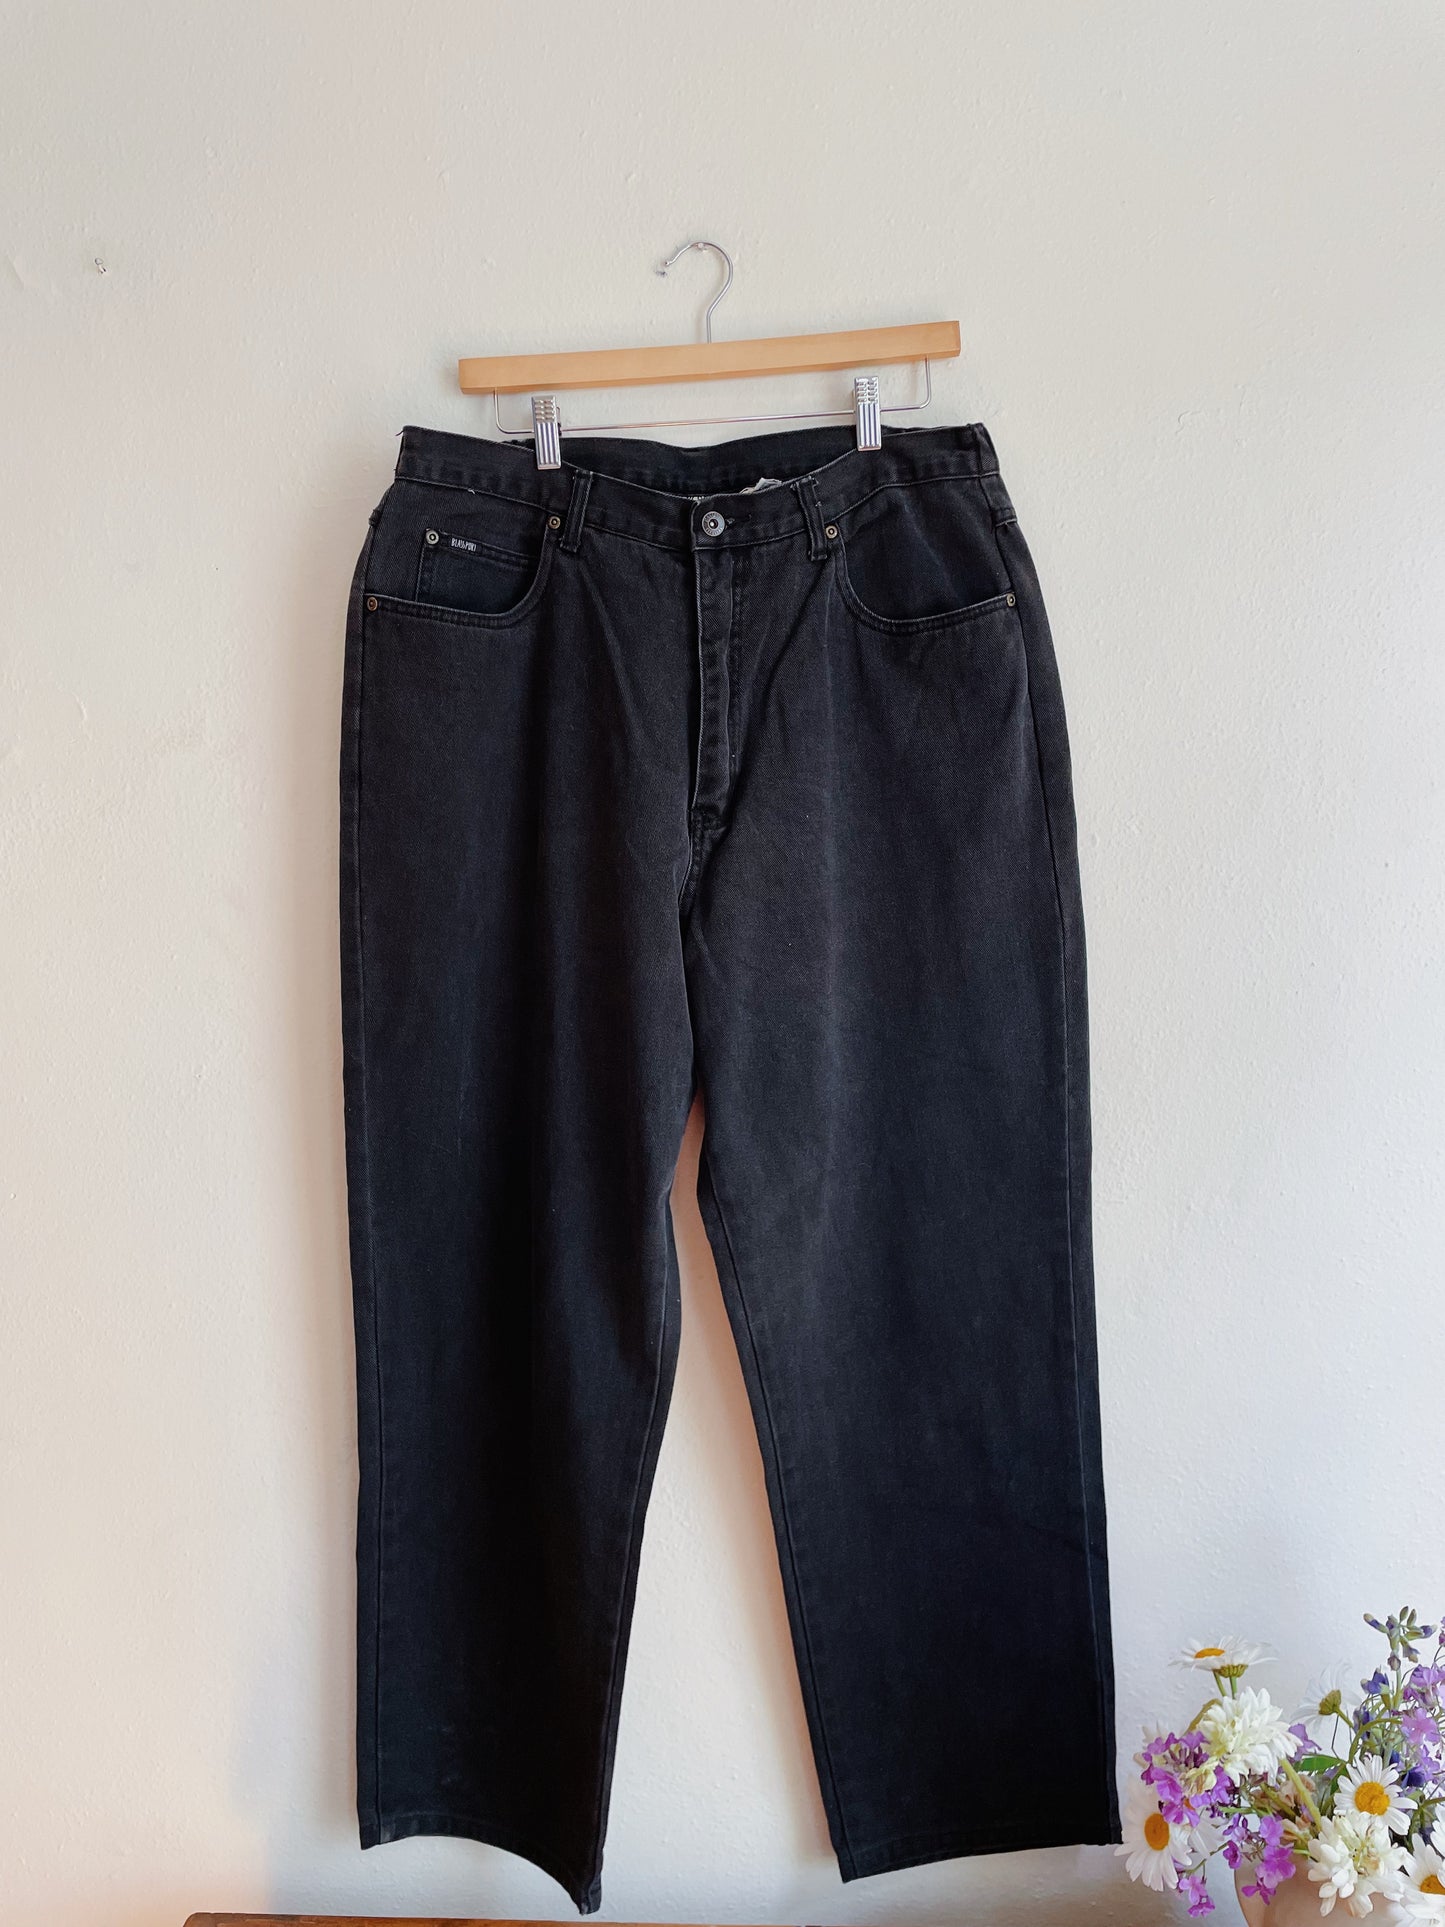 Blassport Jeans (36x29)